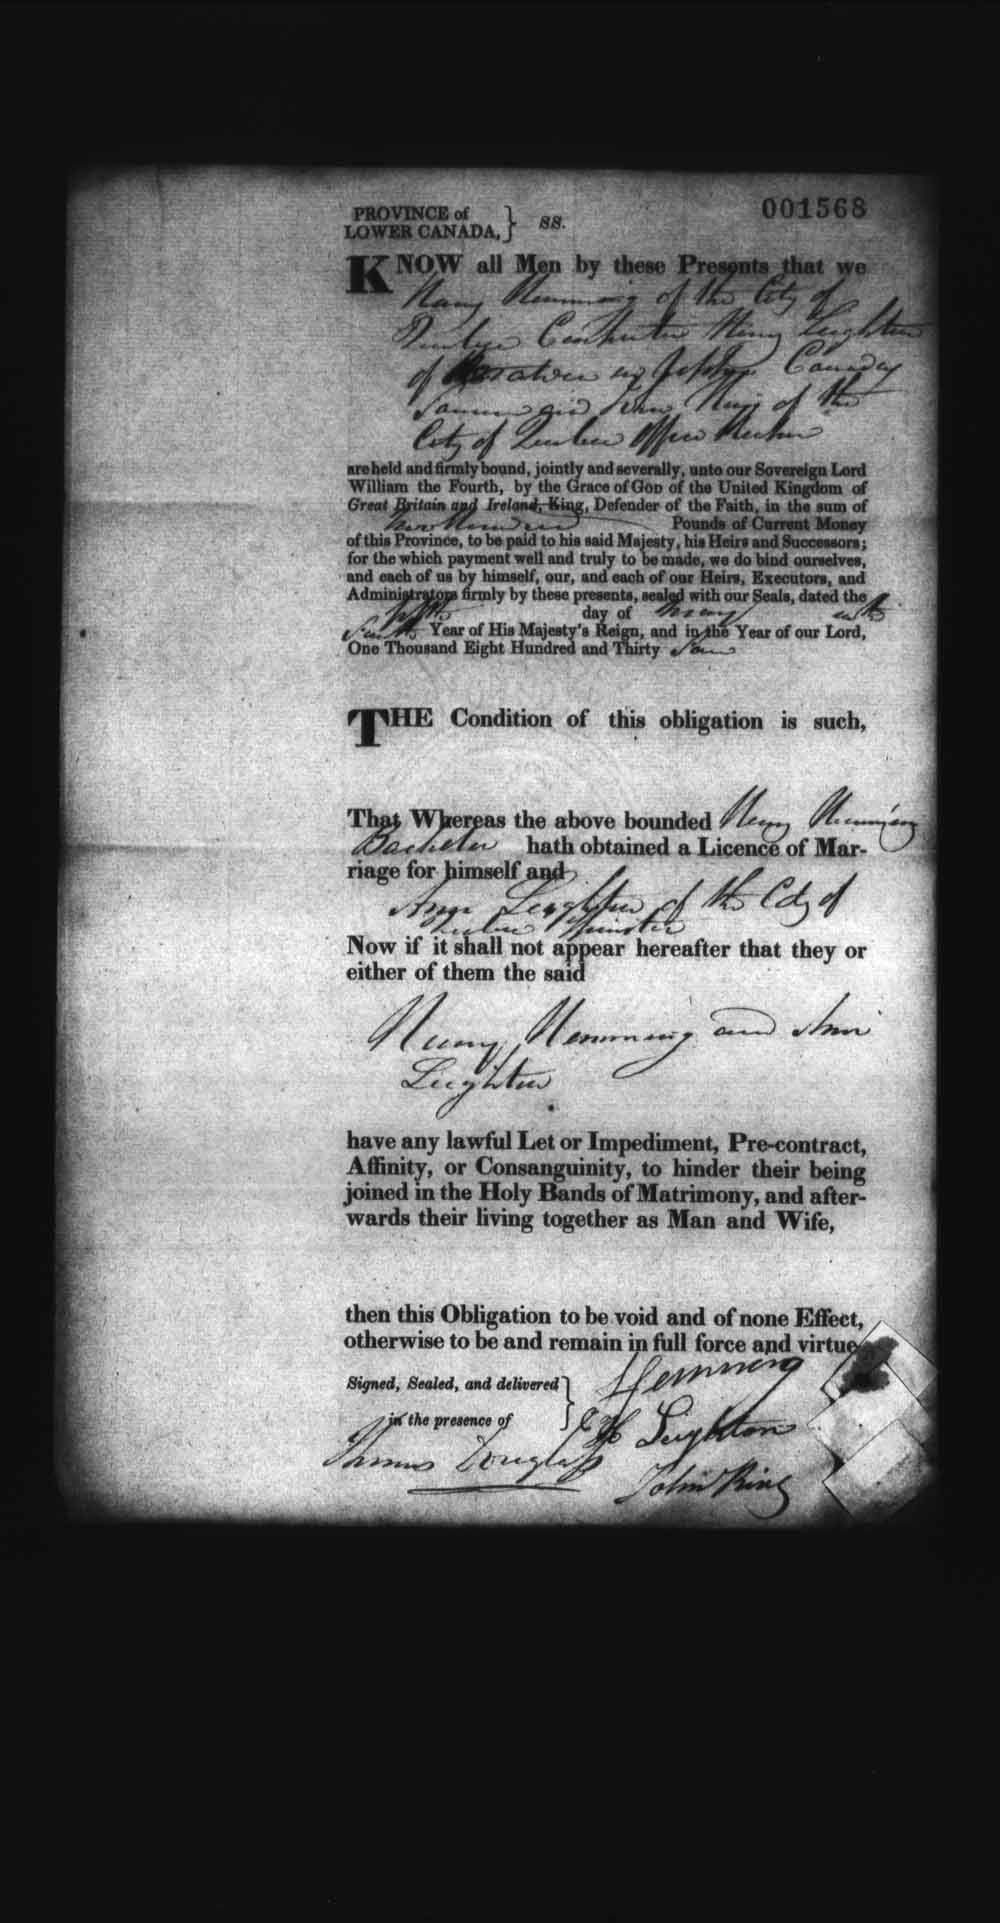 Page numérisé de Cautionnements de mariages pour le Haut-Canada et le Bas-Canada (1779-1865) pour l'image numéro: e008237880